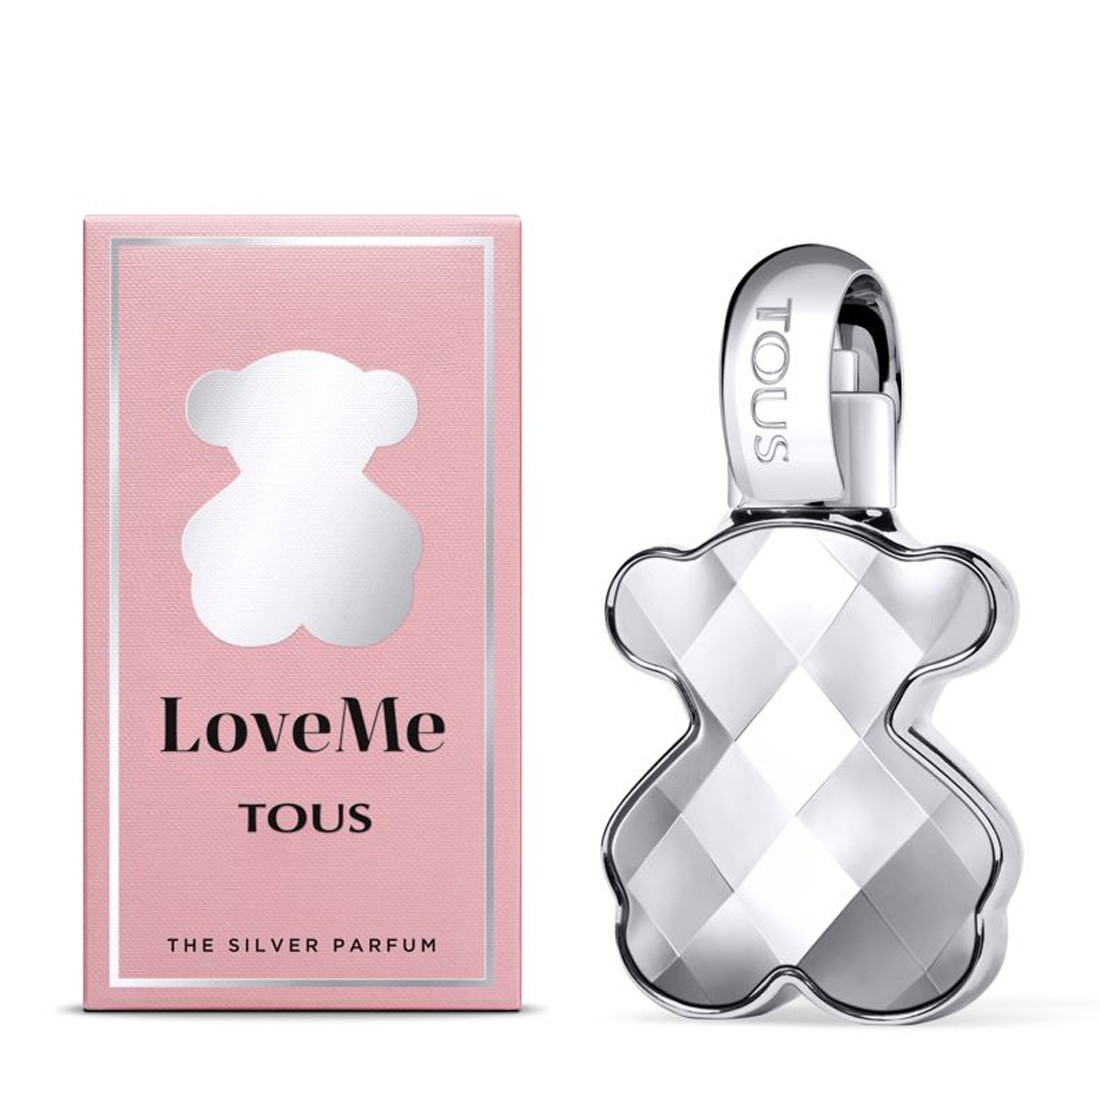 Парфюмерная вода Tous LoveMe The Silver Parfum